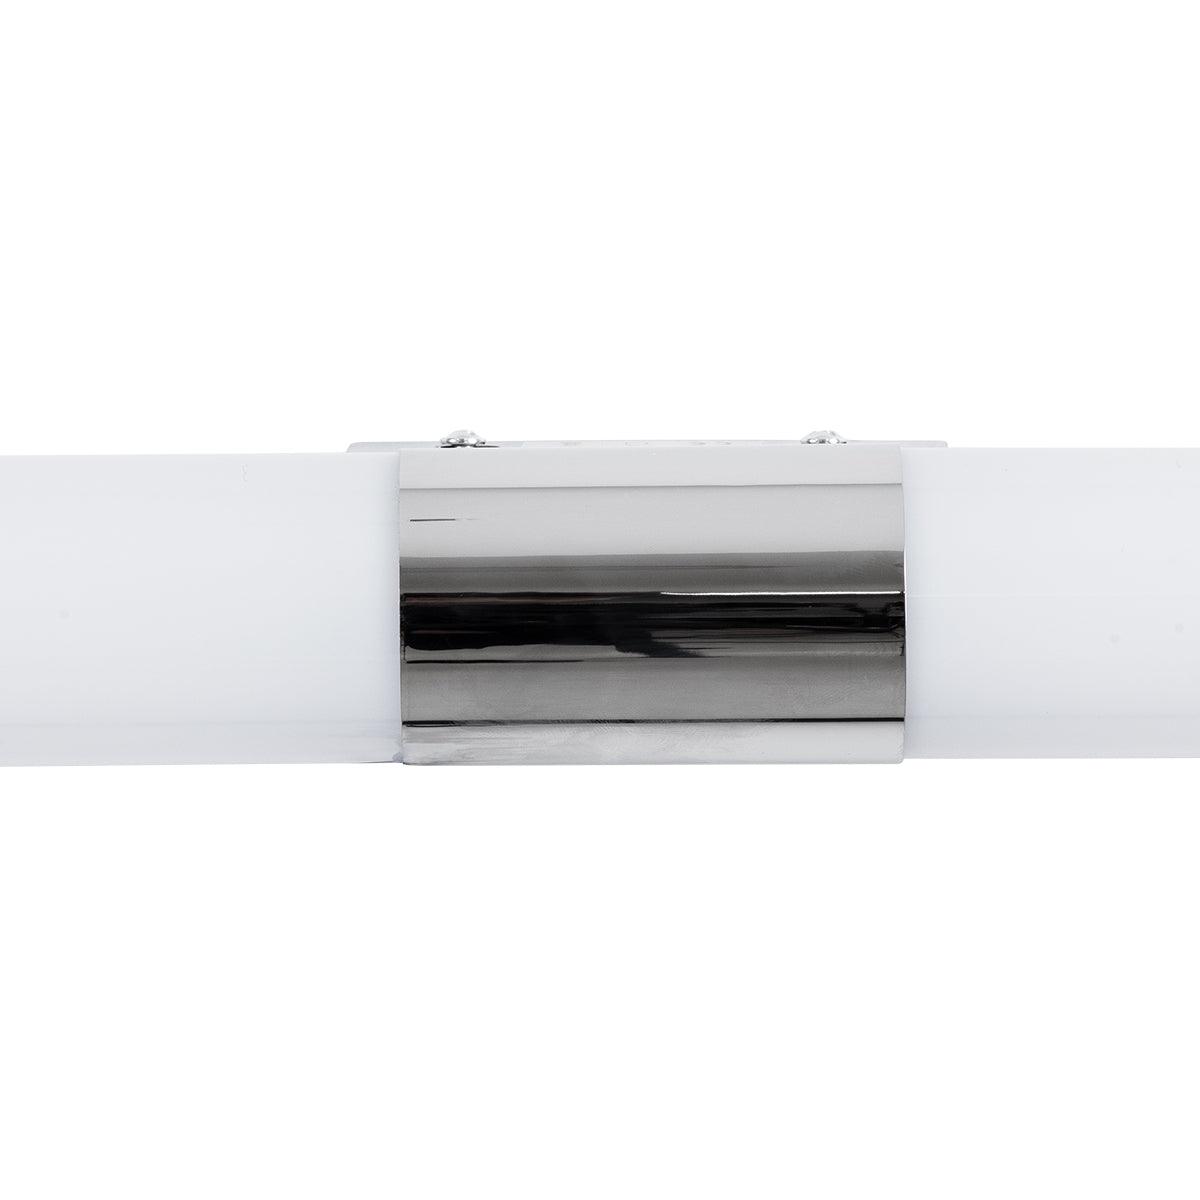 GloboStar® RHEA 85827 Μοντέρνο Φωτιστικό Καθρέπτη Μπάνιου LED 14W 1582lm 360° AC 220-240V - Φυσικό Λευκό 4000K - Μ54 x Π9.5 x Υ5cm Νίκελ - Λευκό - ledmania.gr